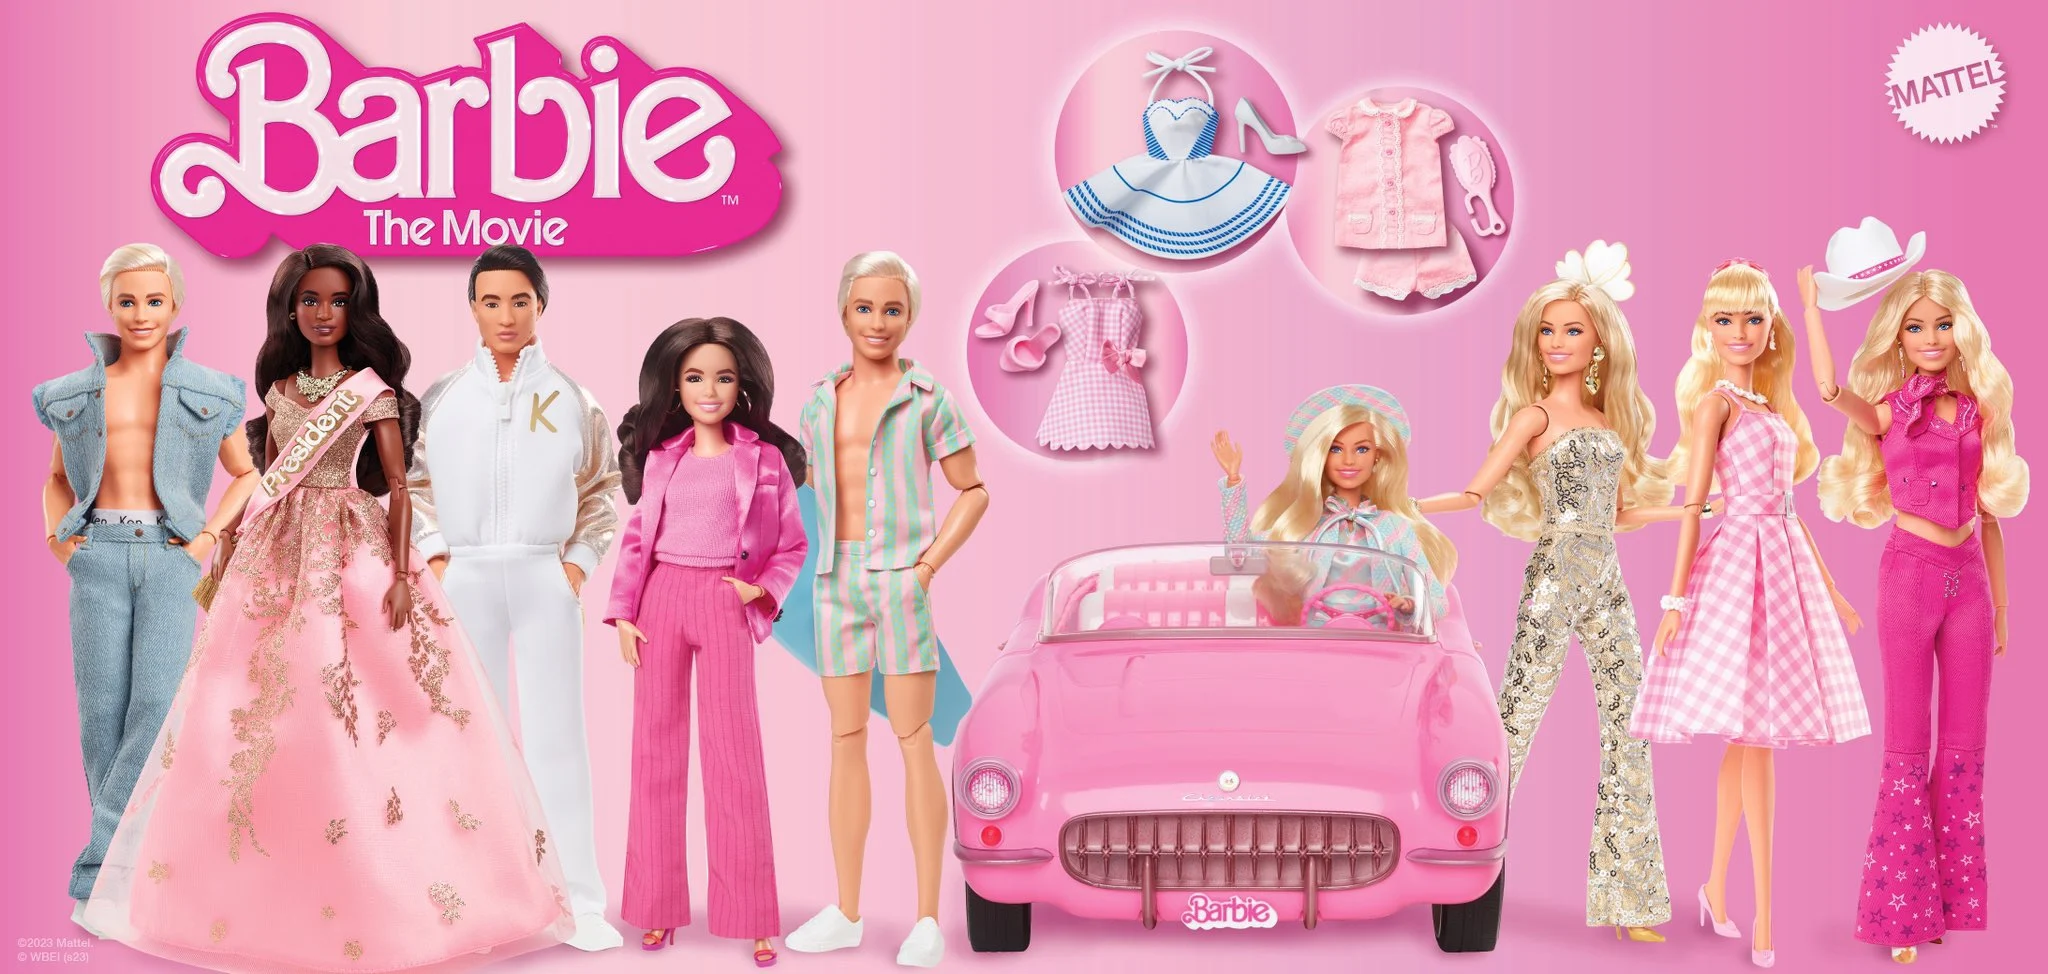 Filme da Barbie: O que esperar do live action?